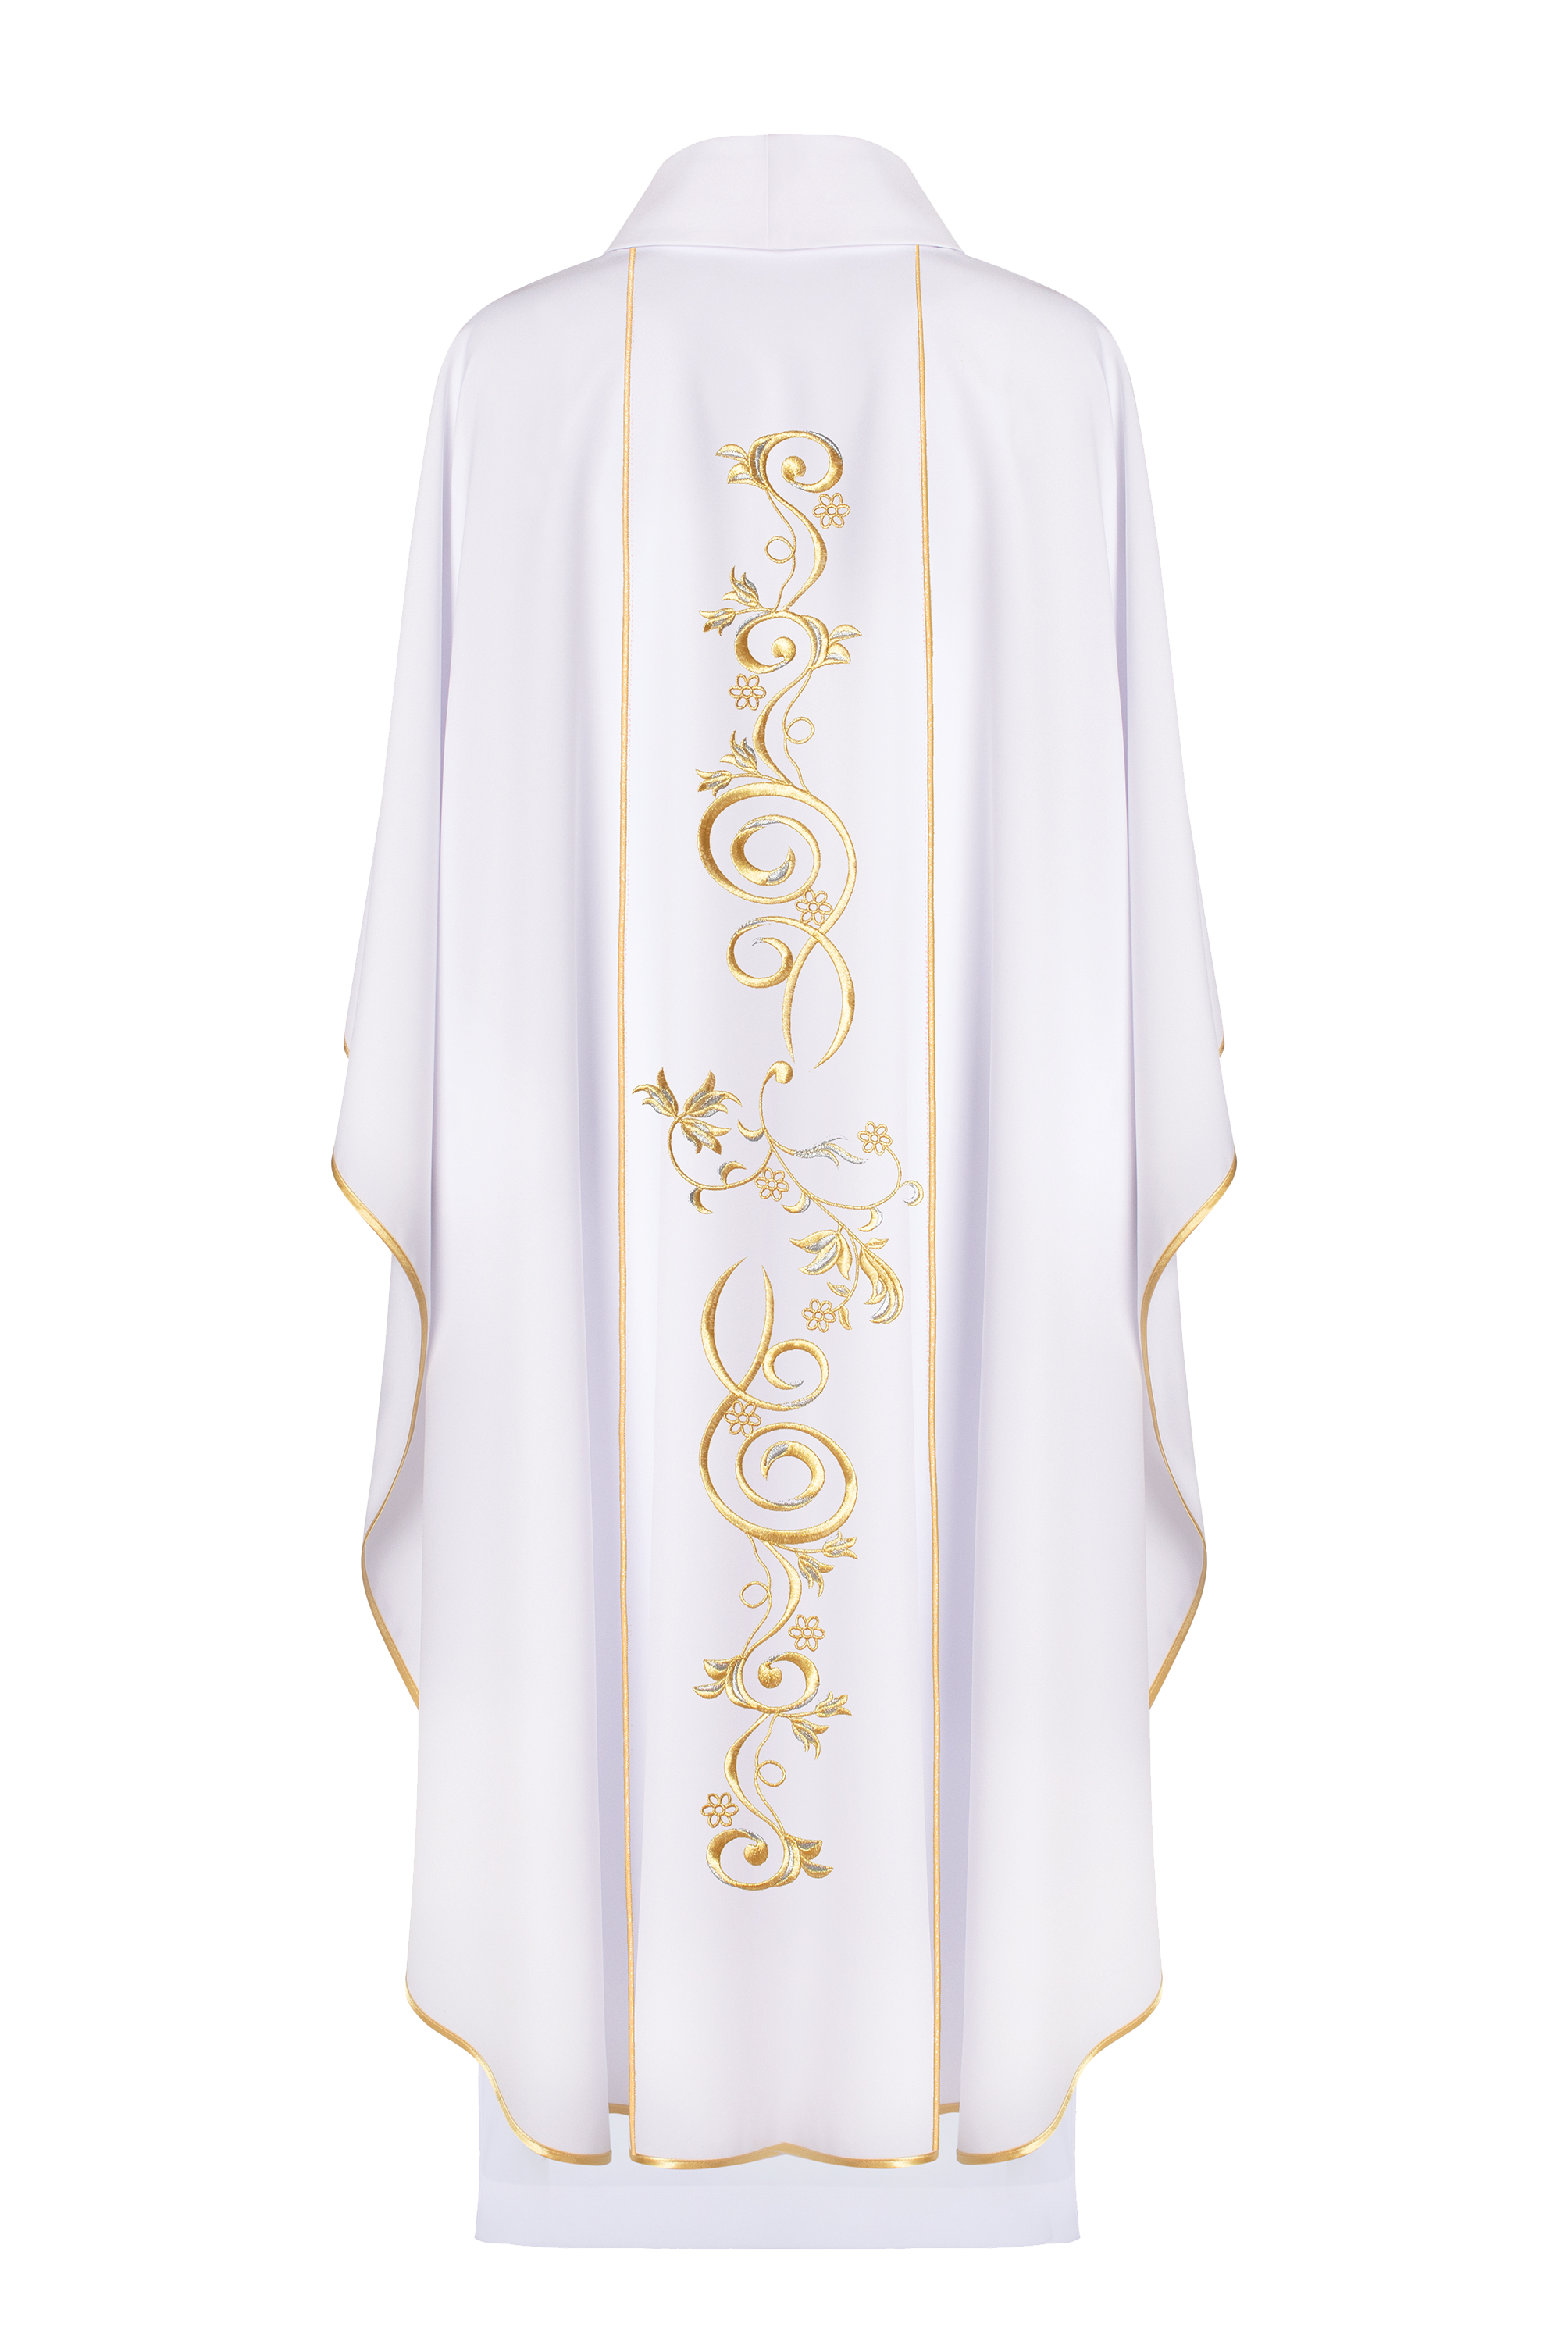 Ornat liturgiczny Maryjny z pasem haftowanym w kolorze białym